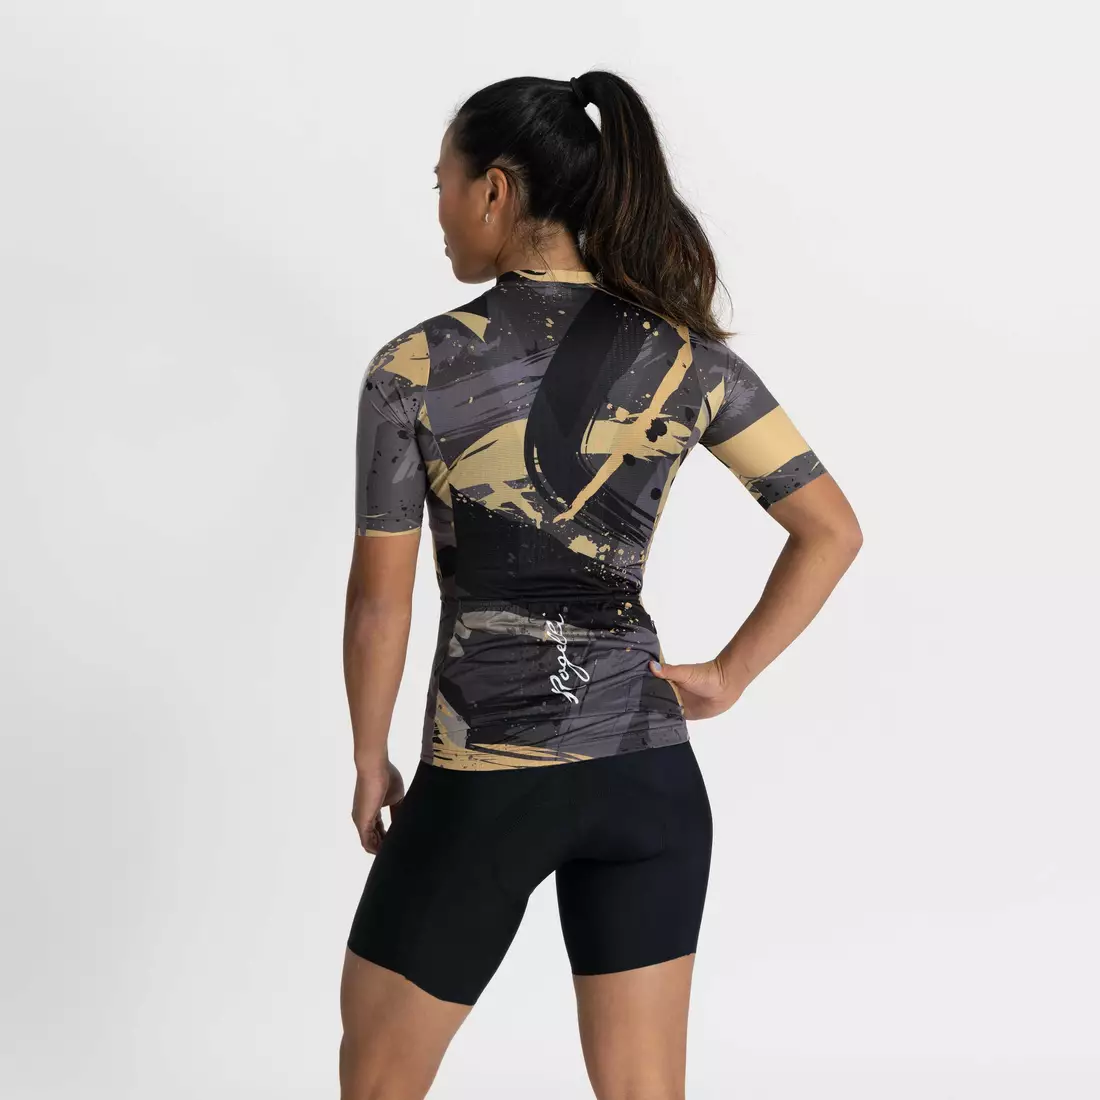 ROGELLI FLAIR dámsky cyklistický dres čierne zlato